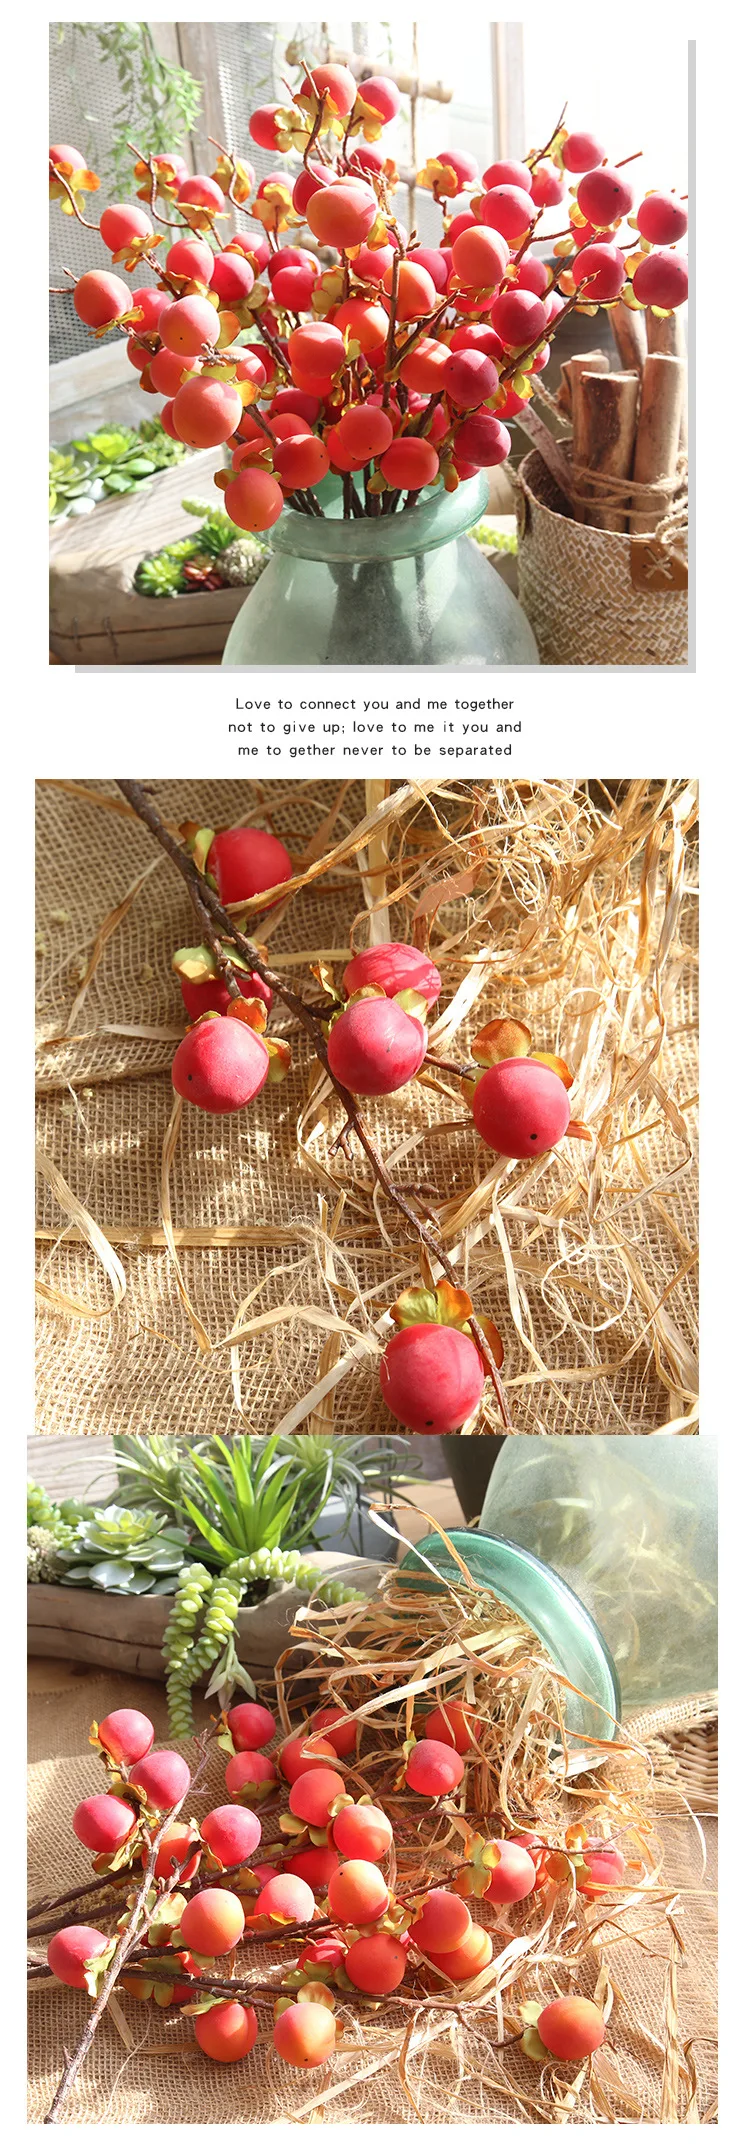 Персик фрукты моделирование фрукты фасоли ветка Моделирование цветок для свадебного украшения ручной цветок и искусственный цветок стены